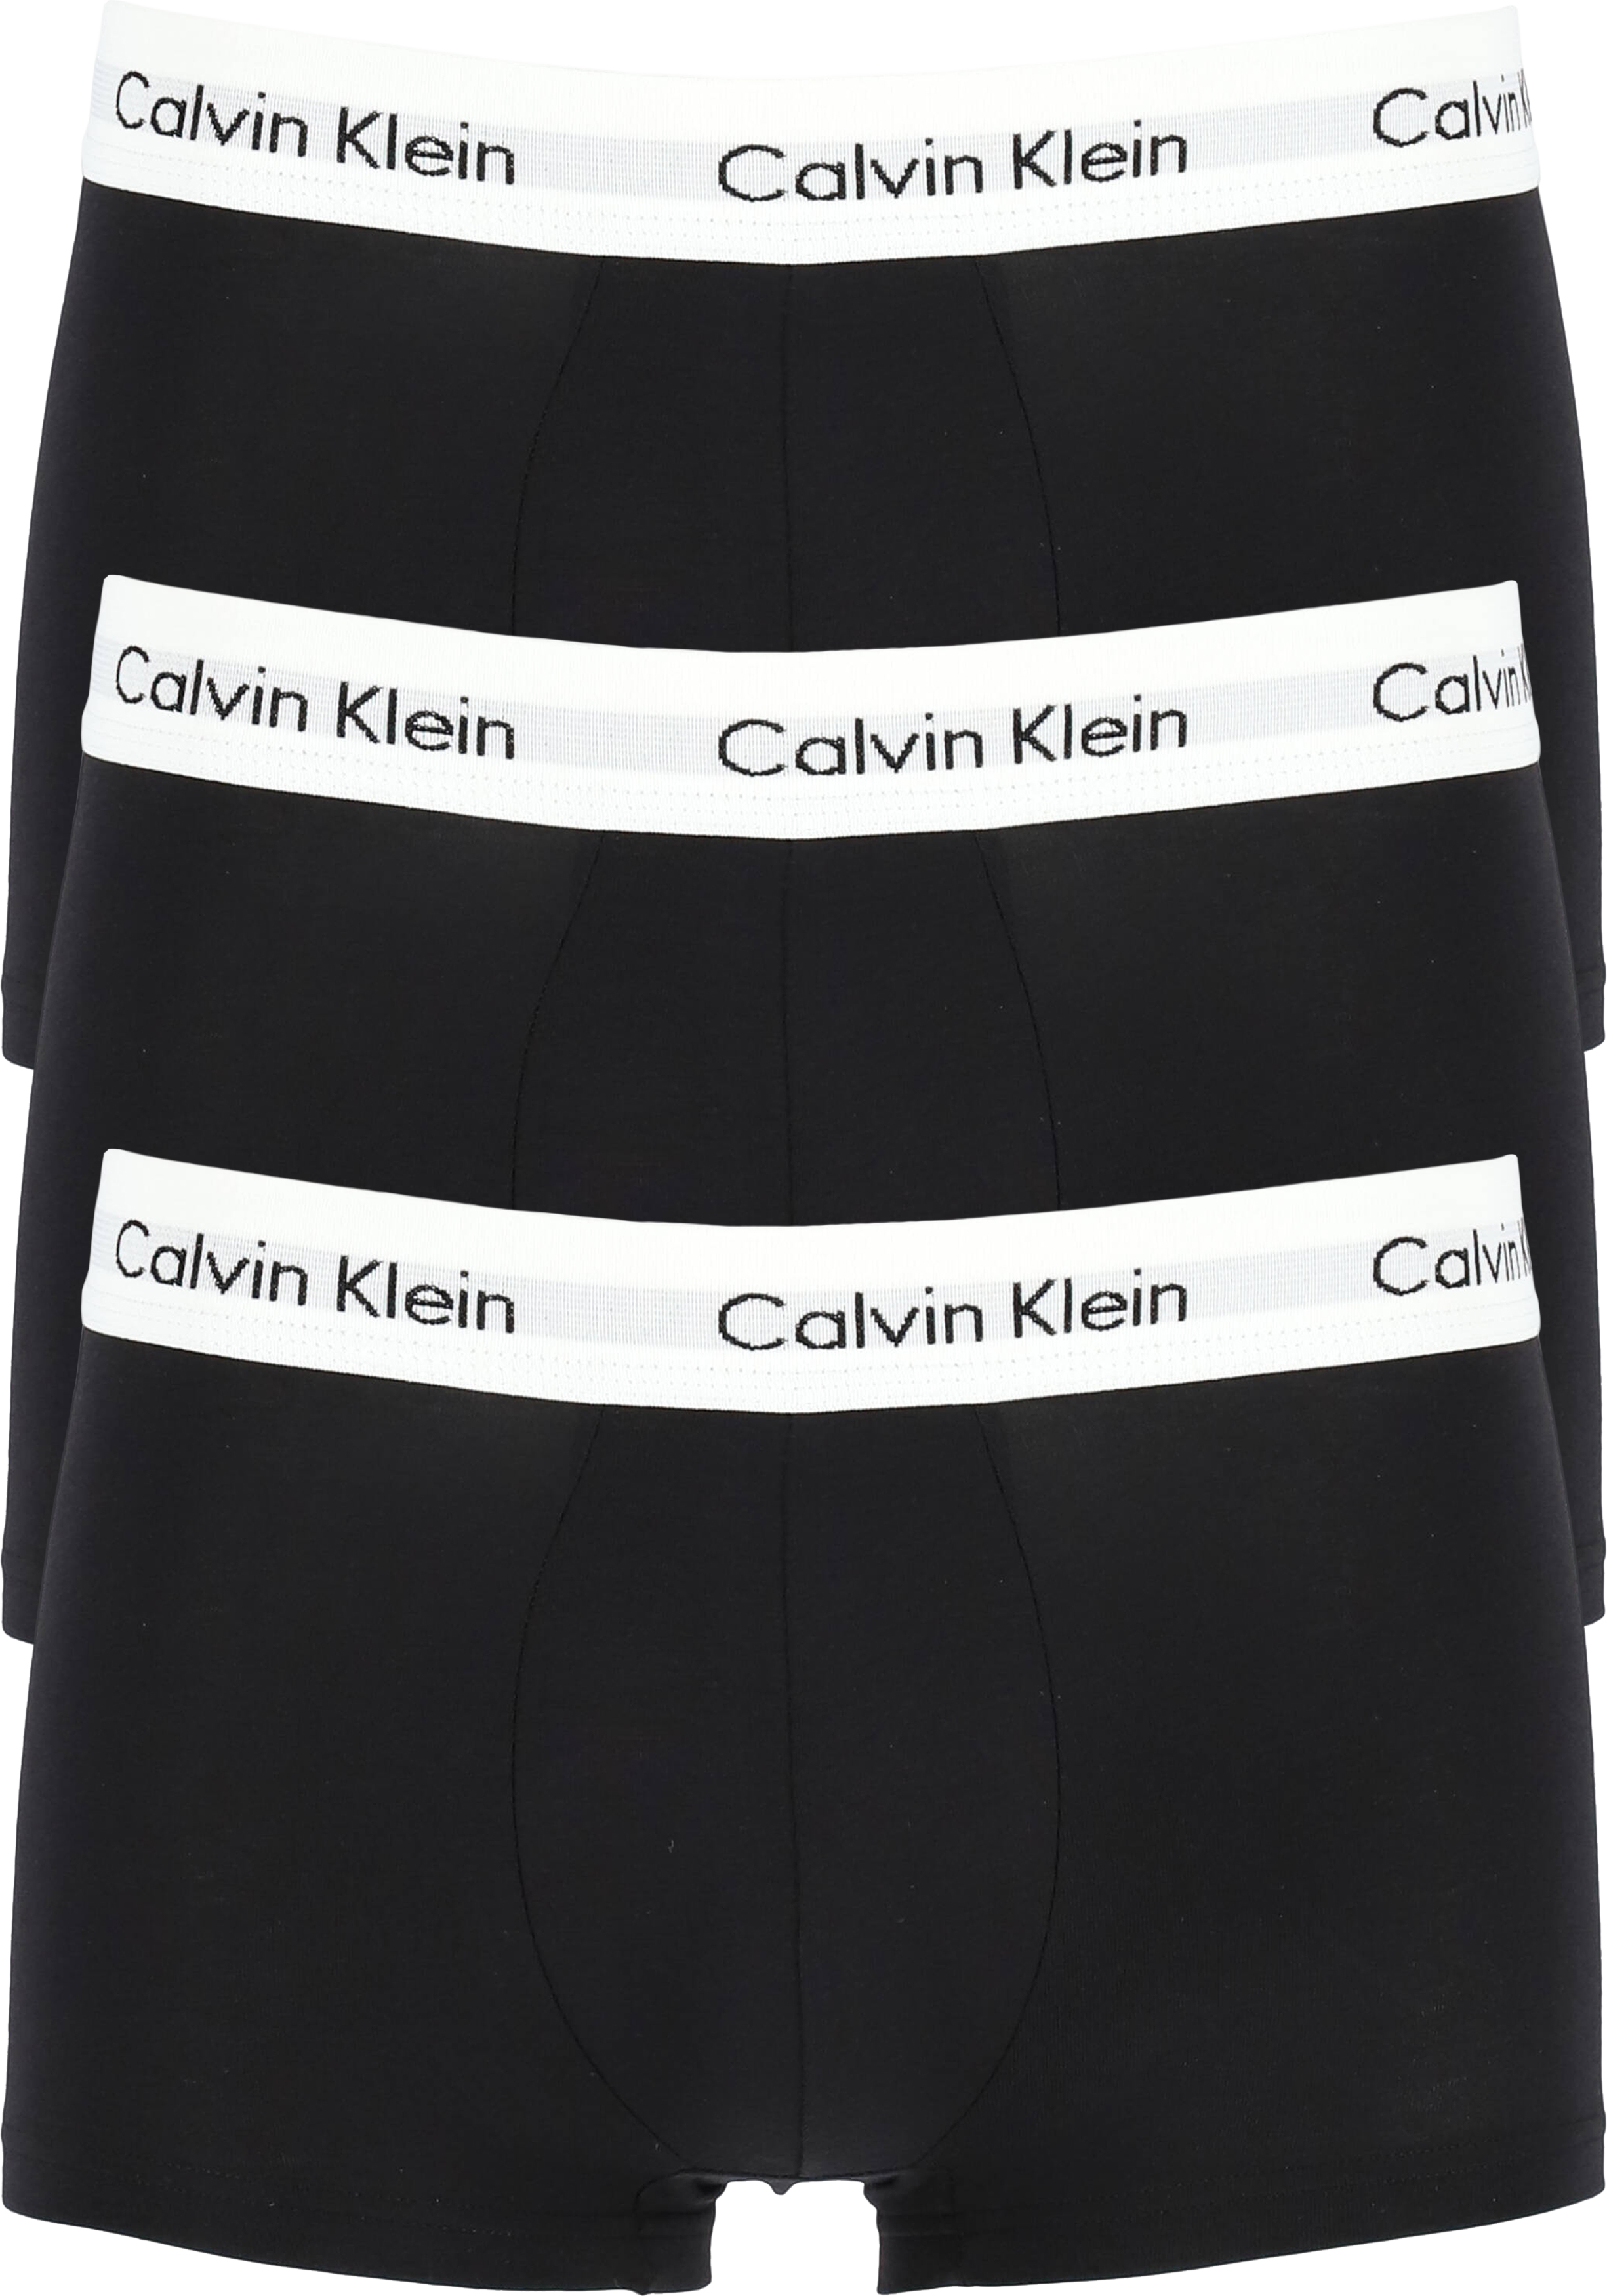 Calvin Klein low rise trunks (3-pack), lage heren boxers kort, zwart